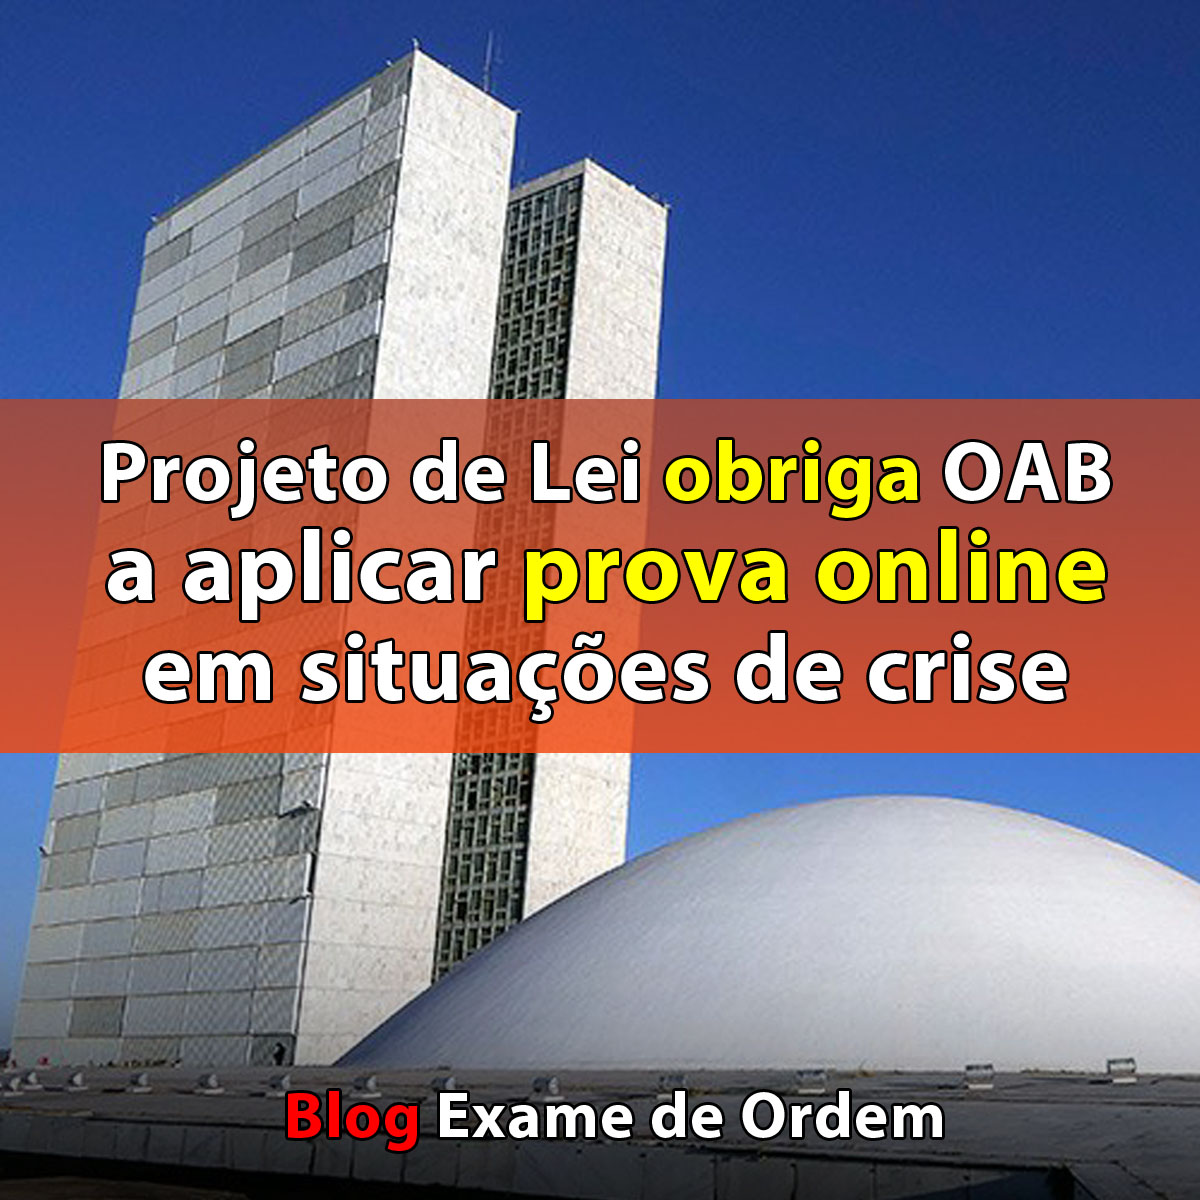 Projeto de Lei obriga OAB a aplicar prova online em situações de crise